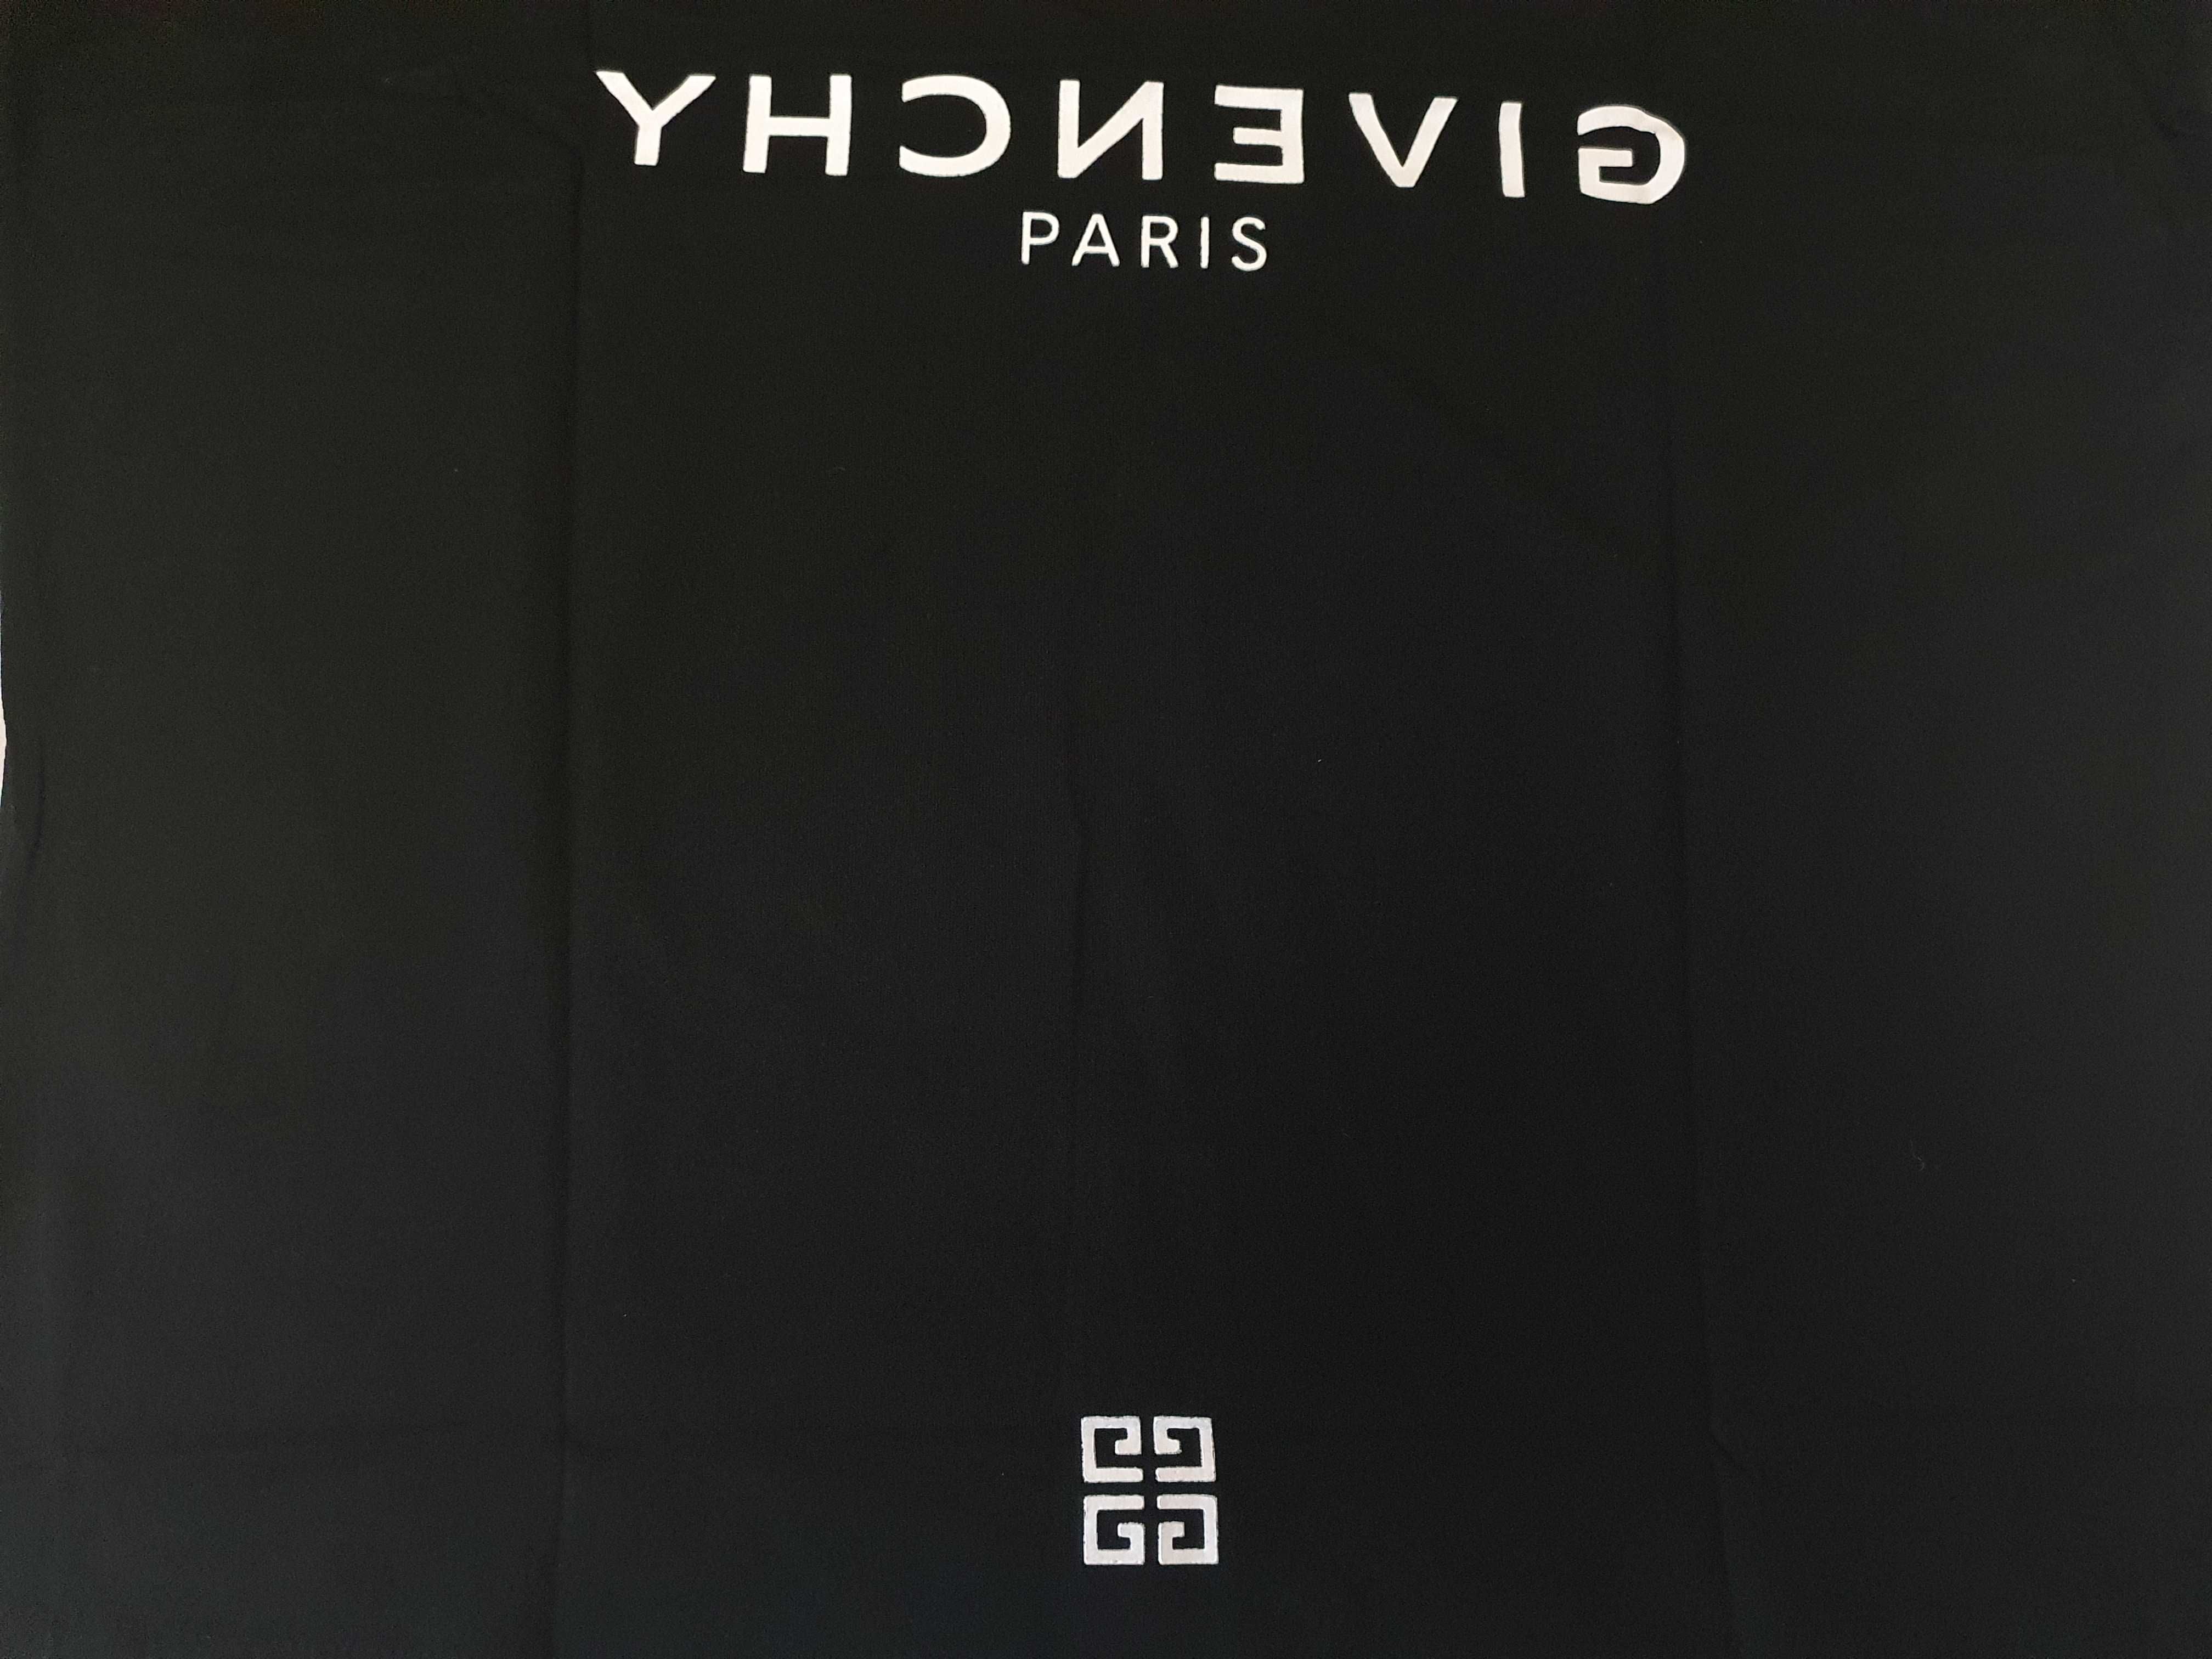 NOWA męska koszulka Givenchy t-shirt oversize XL nietoperz czarna